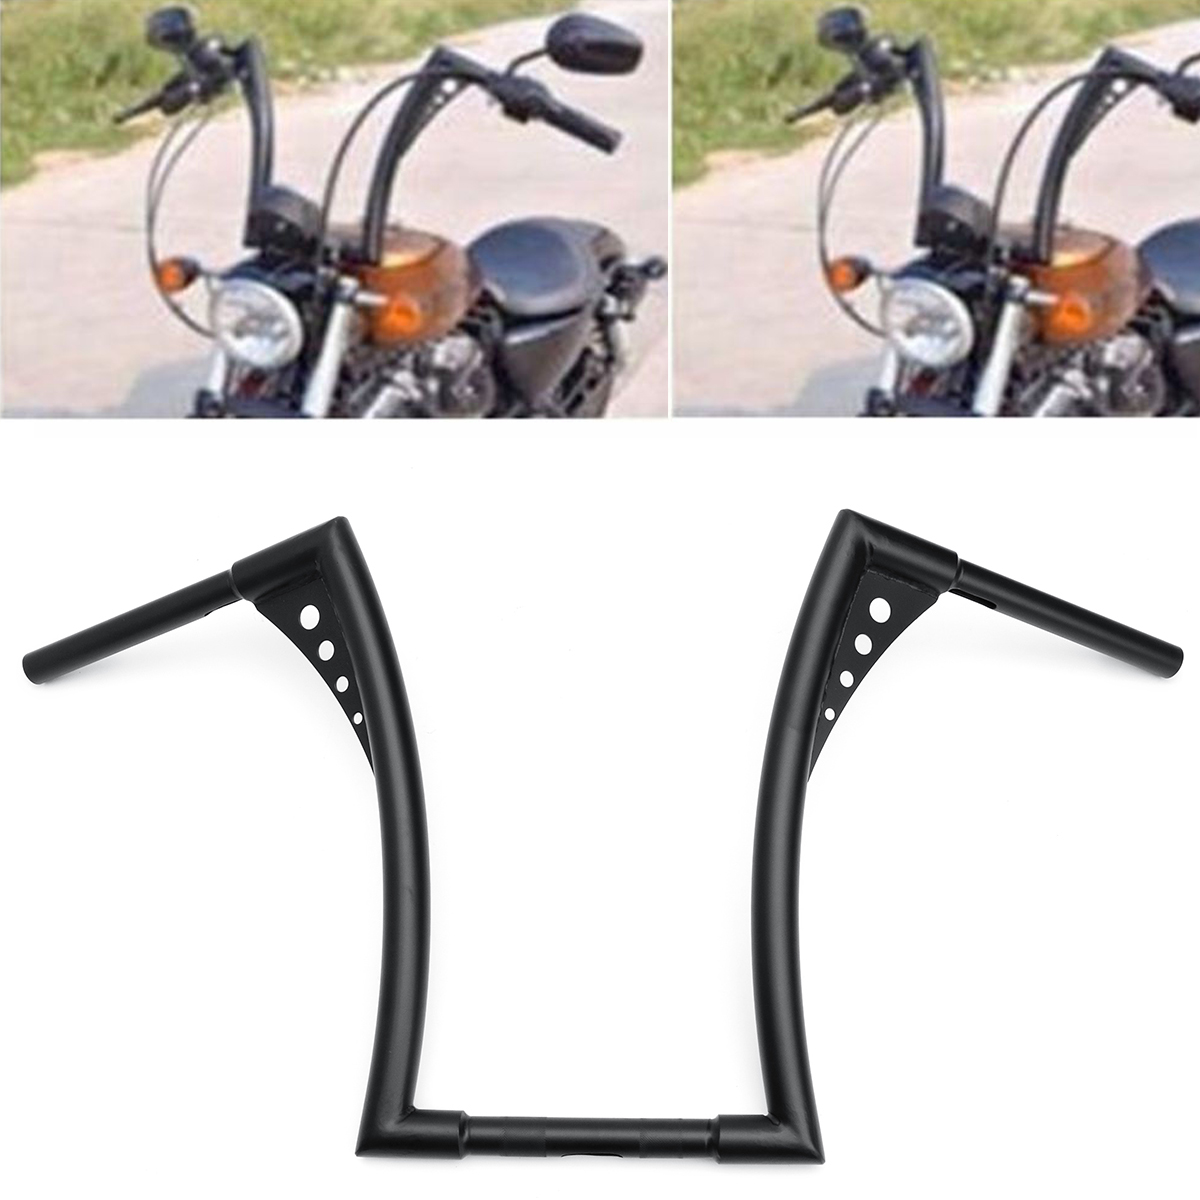 16-inch-Rise-Ape-Hangers-Bike-Handlebar-Black-For-Harley-Softail-FLST-FXST-Sportster-XL-1295634